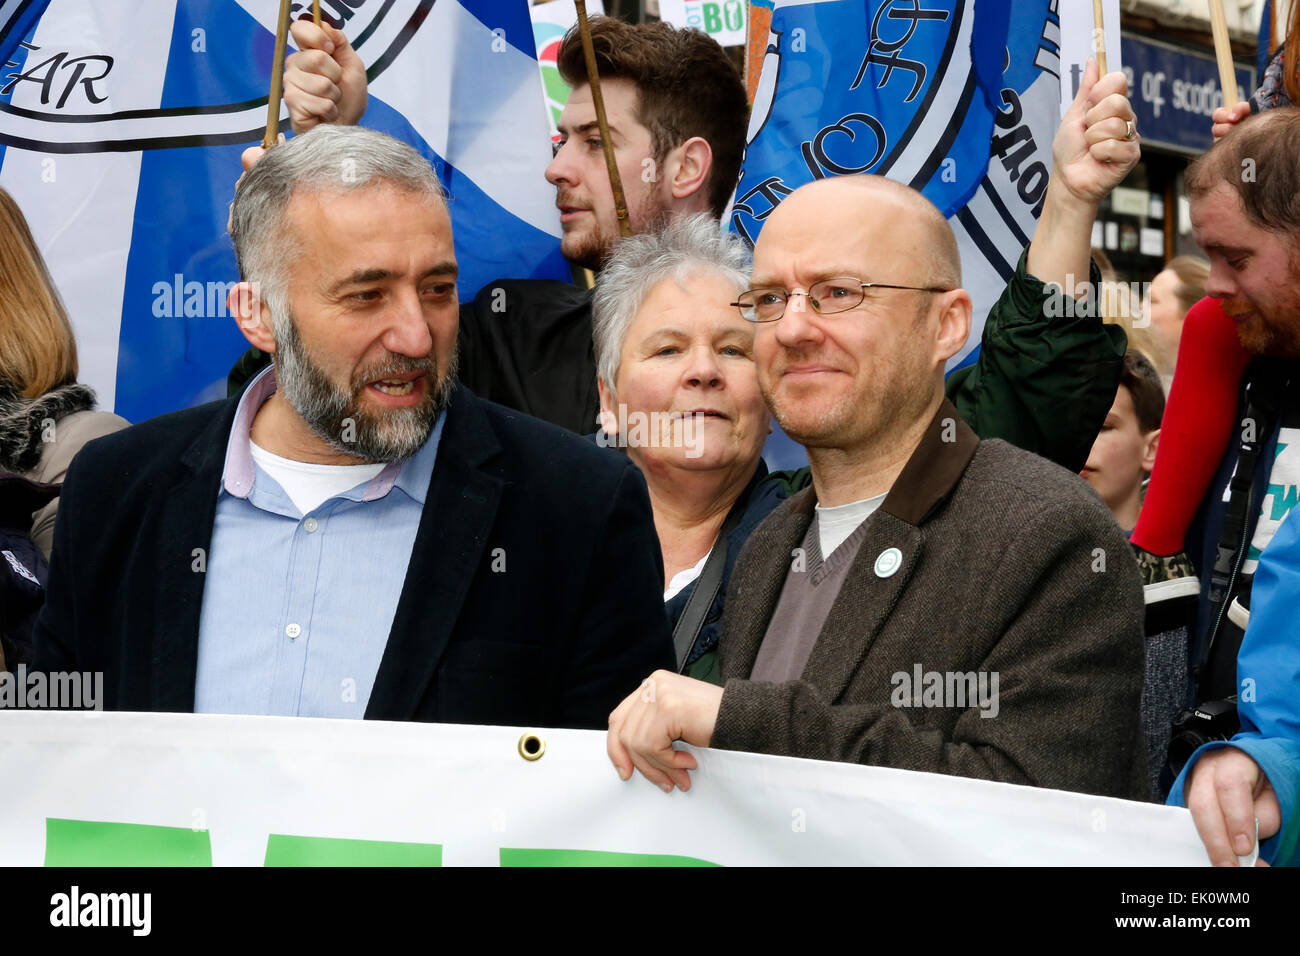 Plus de 2000 manifestants ont pris part à une manifestation anti-nucléaire Trident et mars à Glasgow, à partir de la place George Square et défilant à travers le centre ville. Plusieurs hommes politiques ont pris part comme Patrick Harvie, MSP, le chef du Parti Vert écossais. image comprend Patrick Harvie (droit avec specs) Banque D'Images